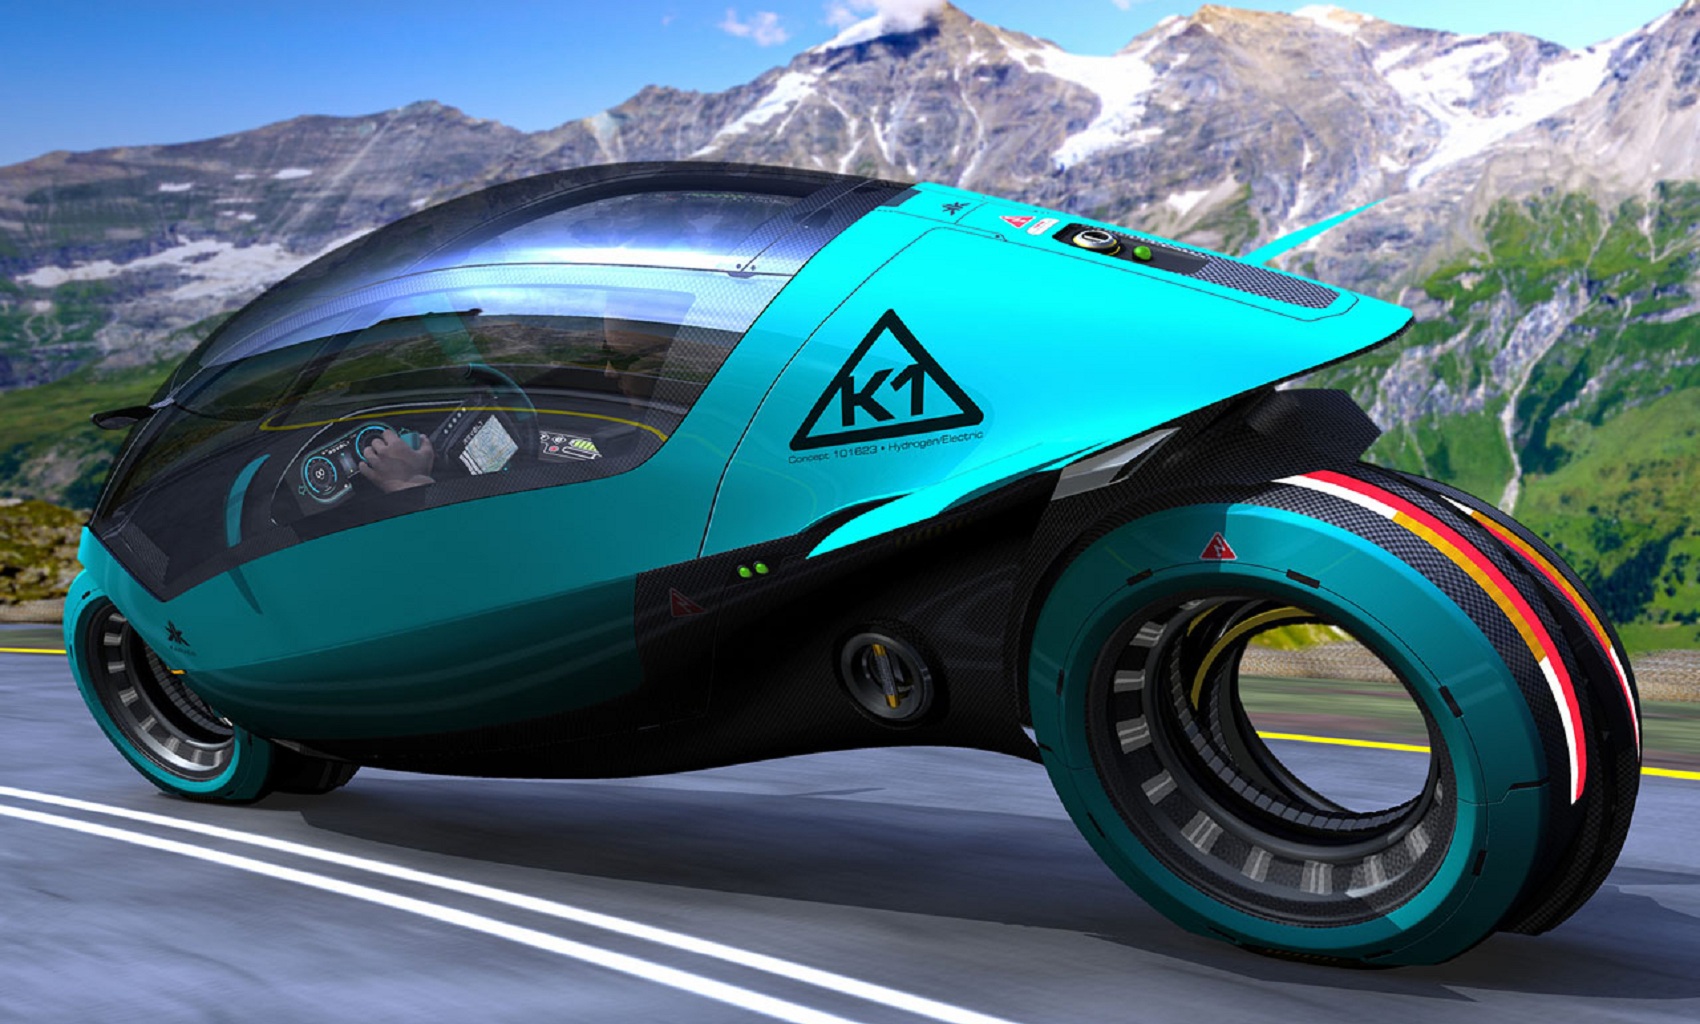 Karver Cycle Concept K1: Cuộc chơi trên hai bánh xe?